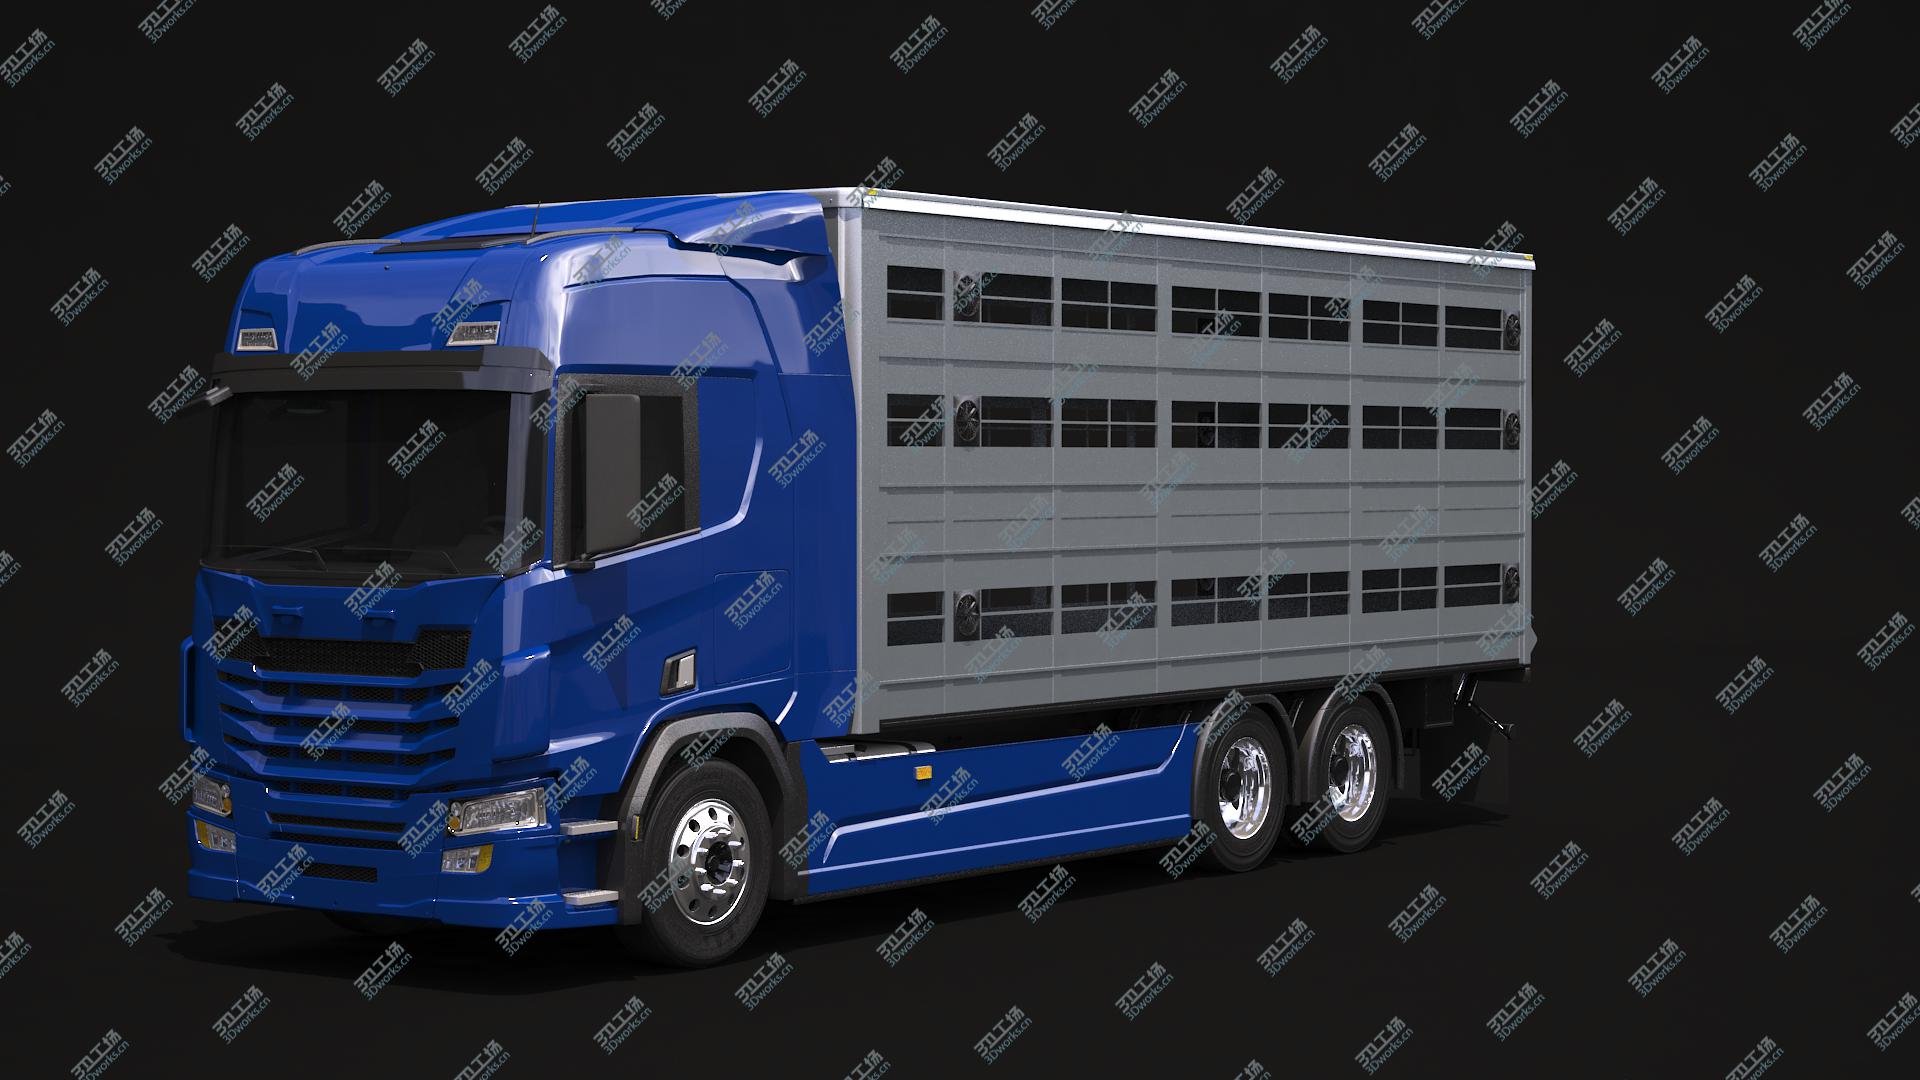 images/goods_img/202104092/3D model Liverstock Truck/1.jpg